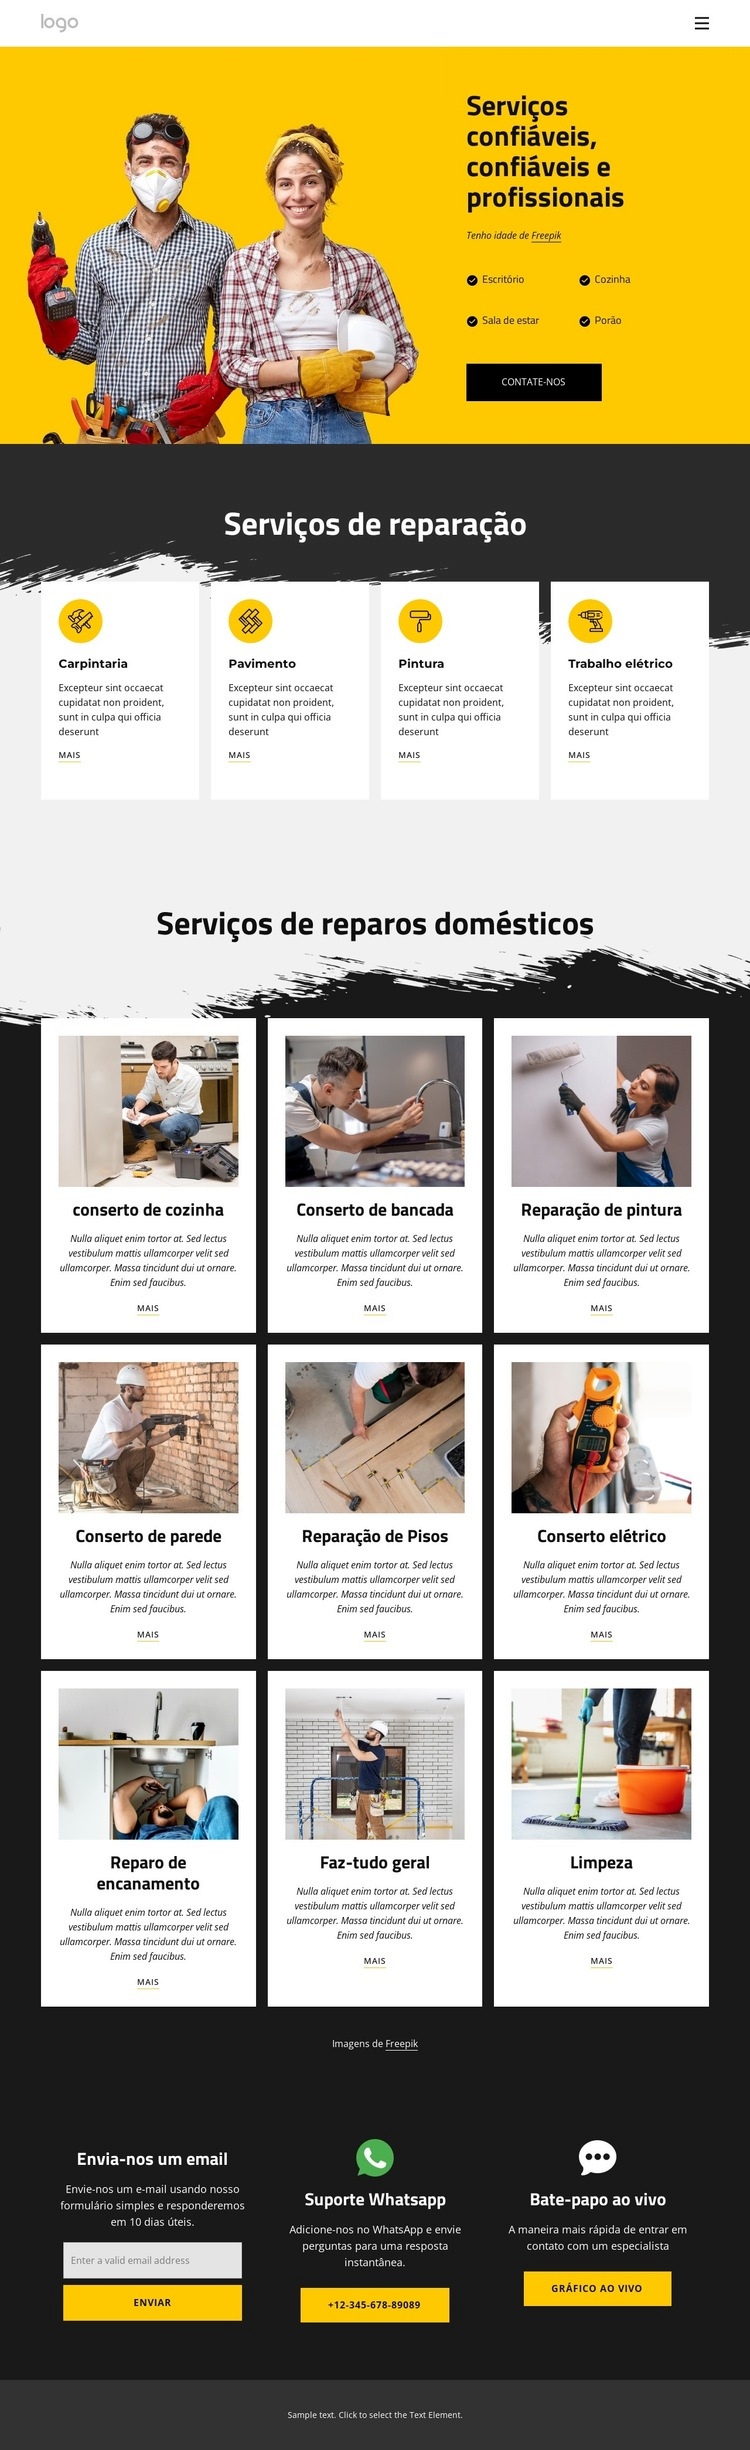 Serviços de mão de obra e reparos em casa Design do site